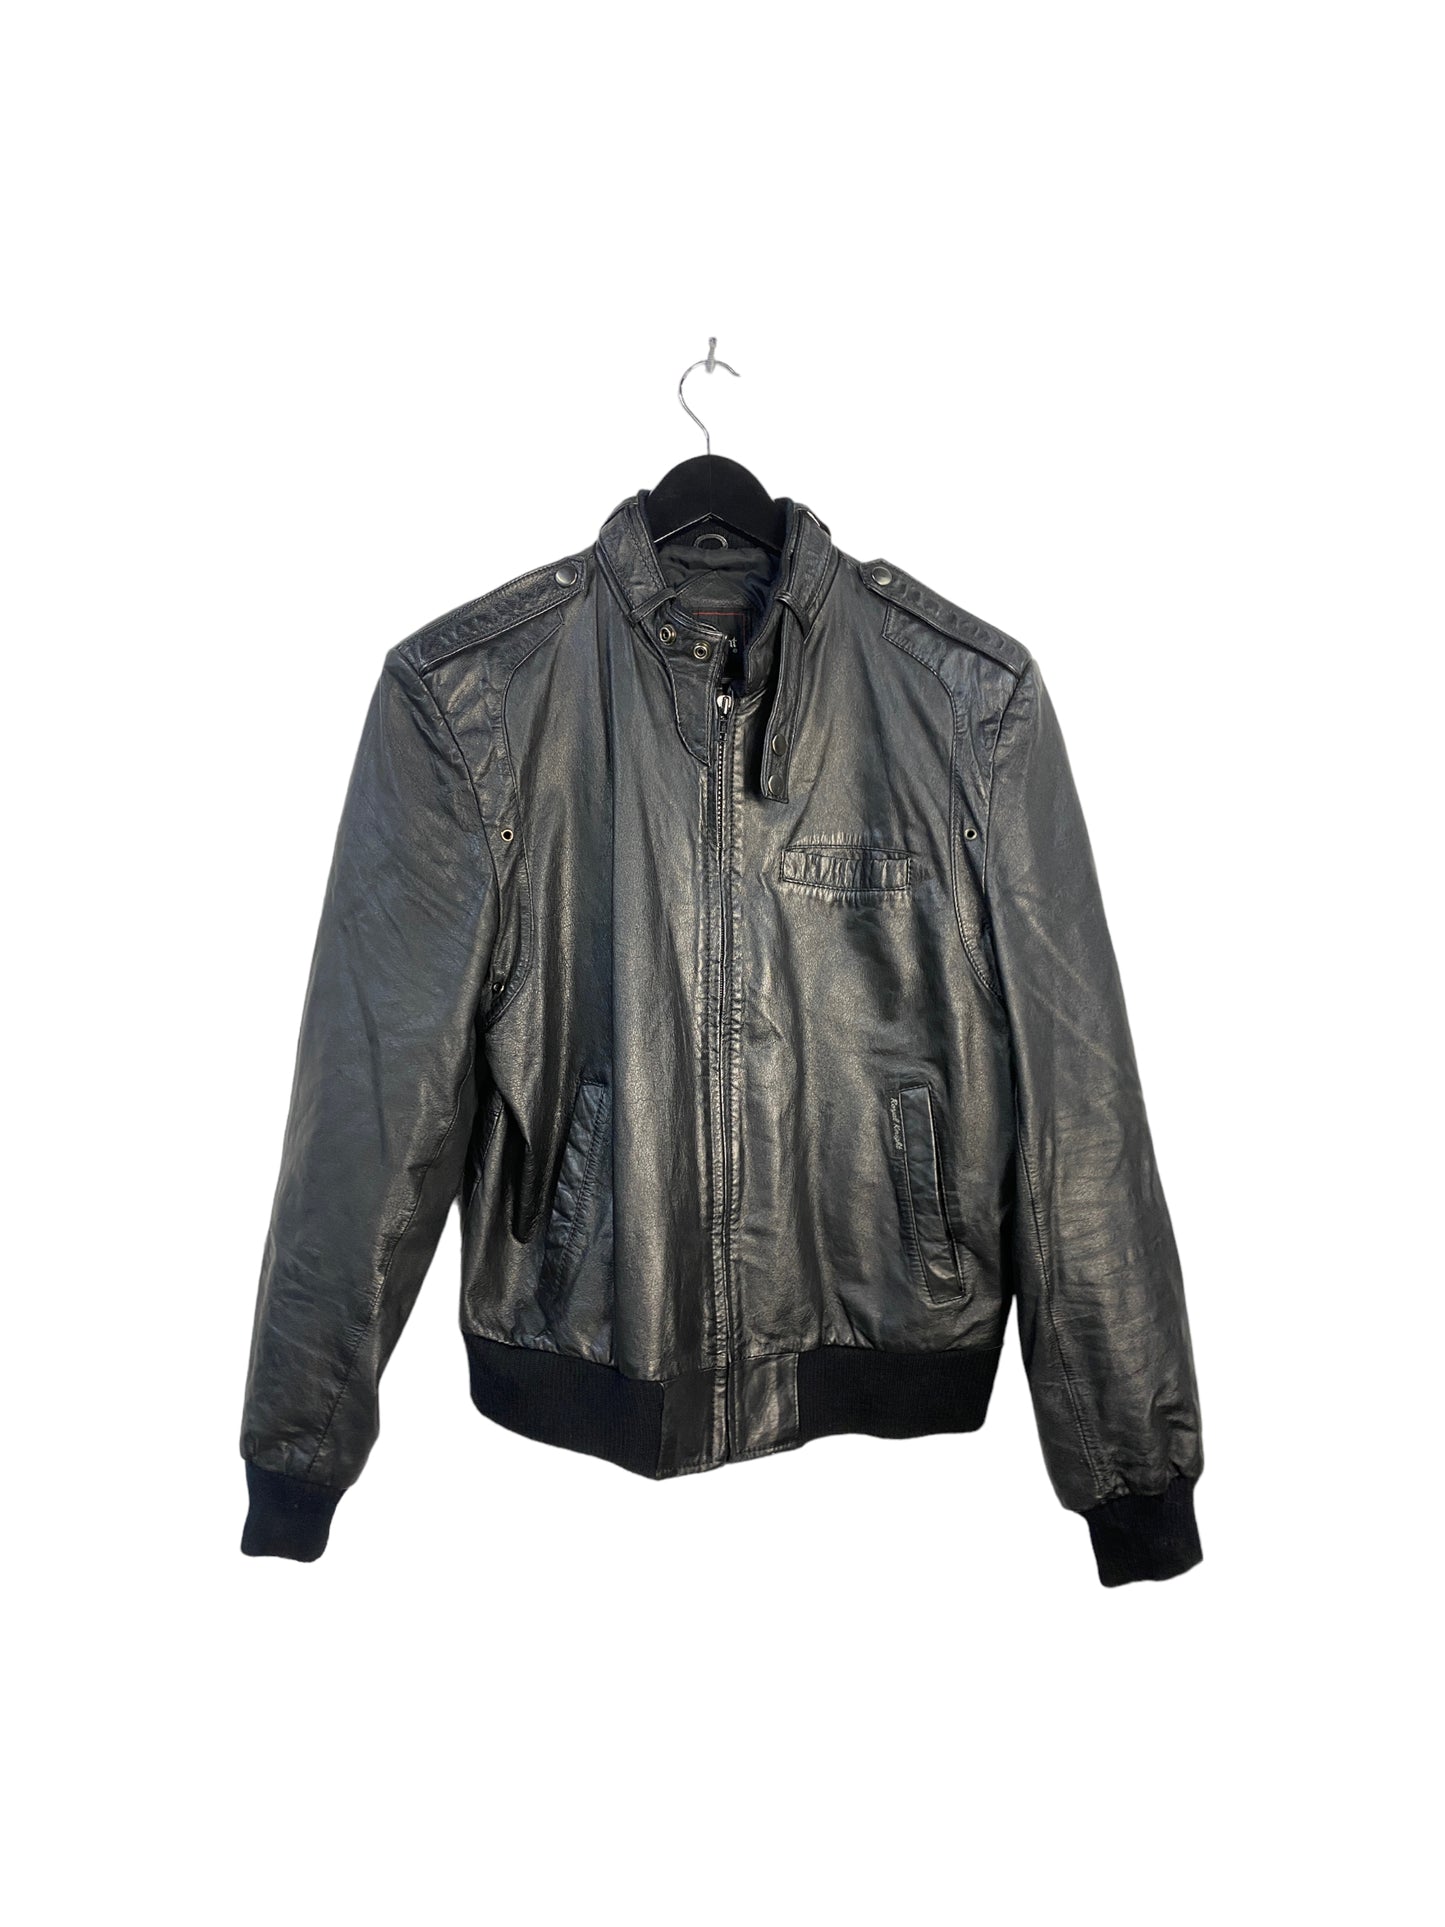 VTG Black Leather Biker Jacket Sz M